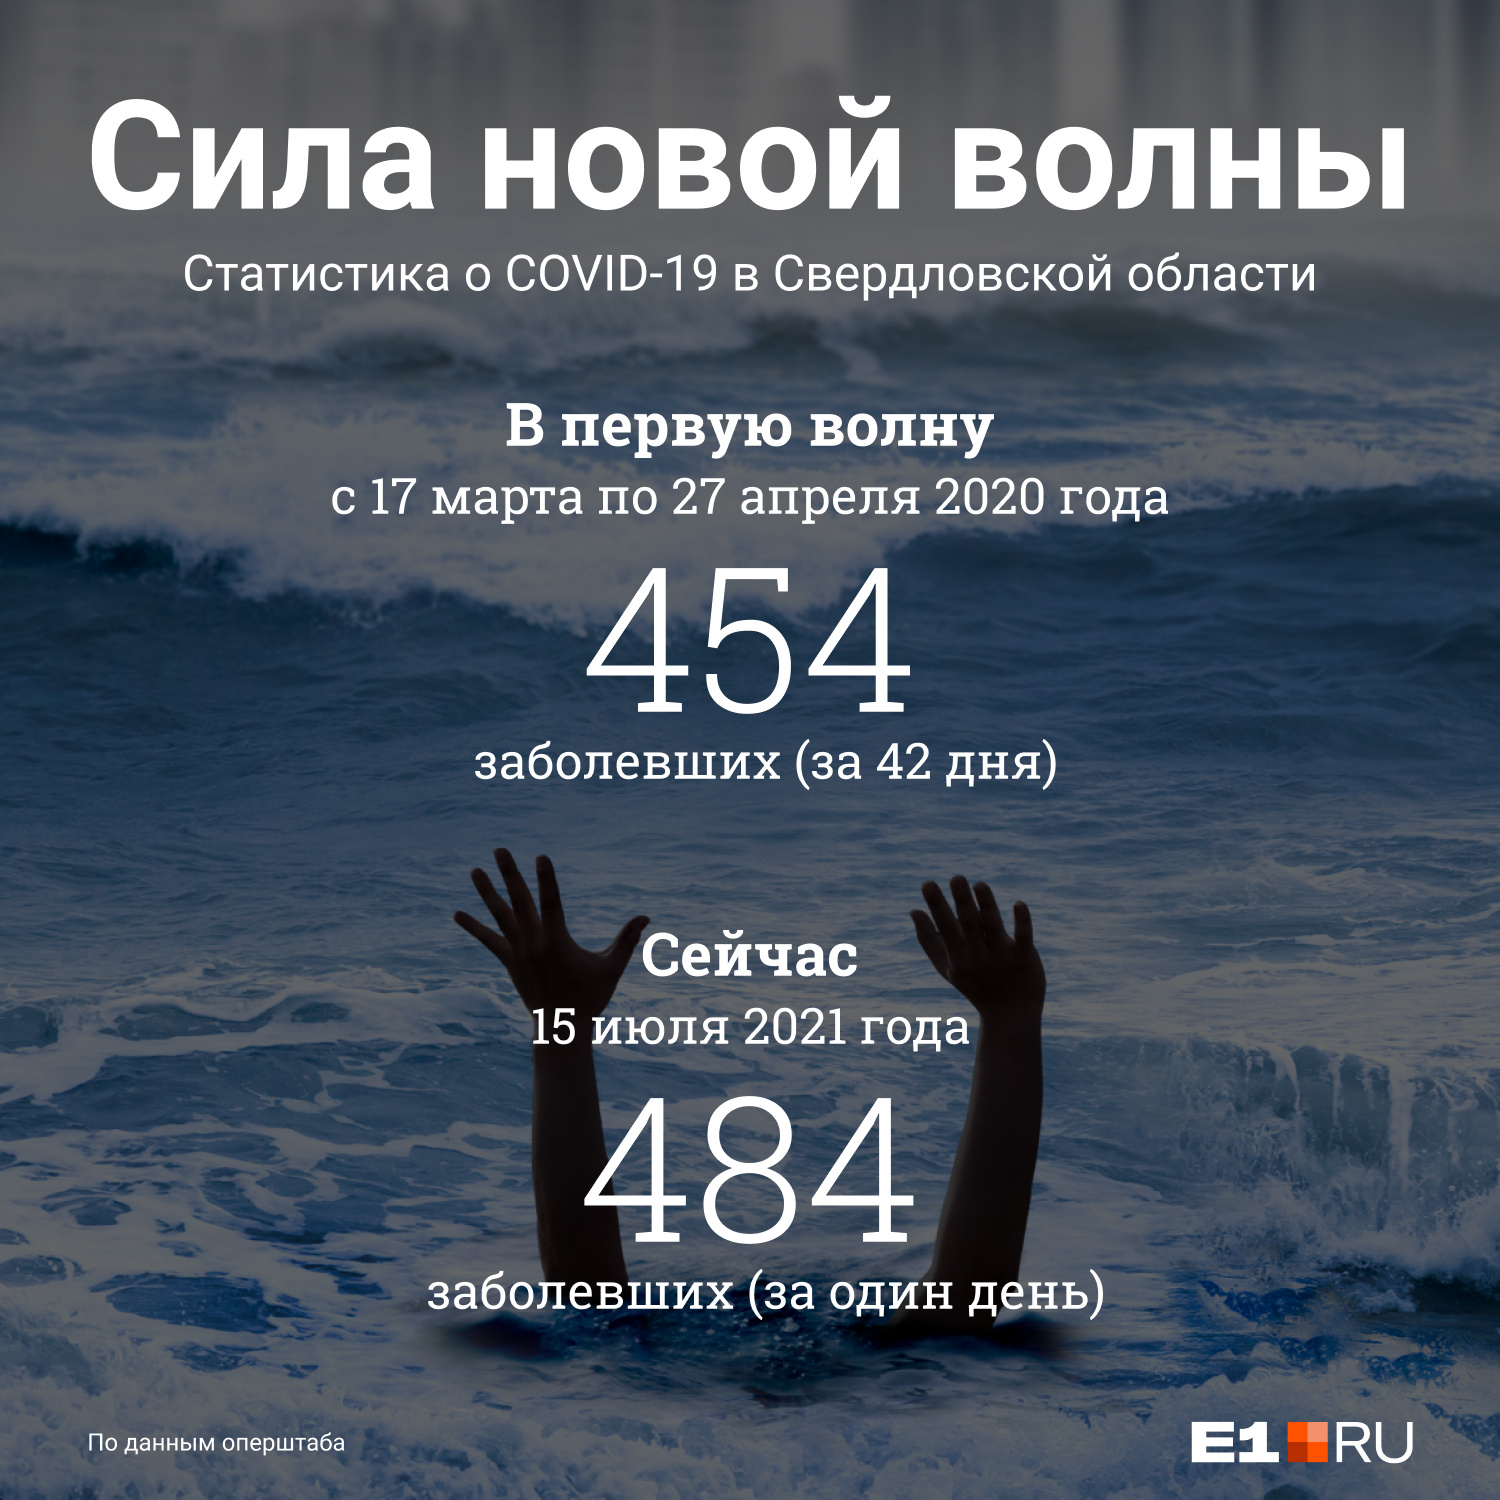 484 случая за сутки — абсолютный антирекорд в Свердловской области